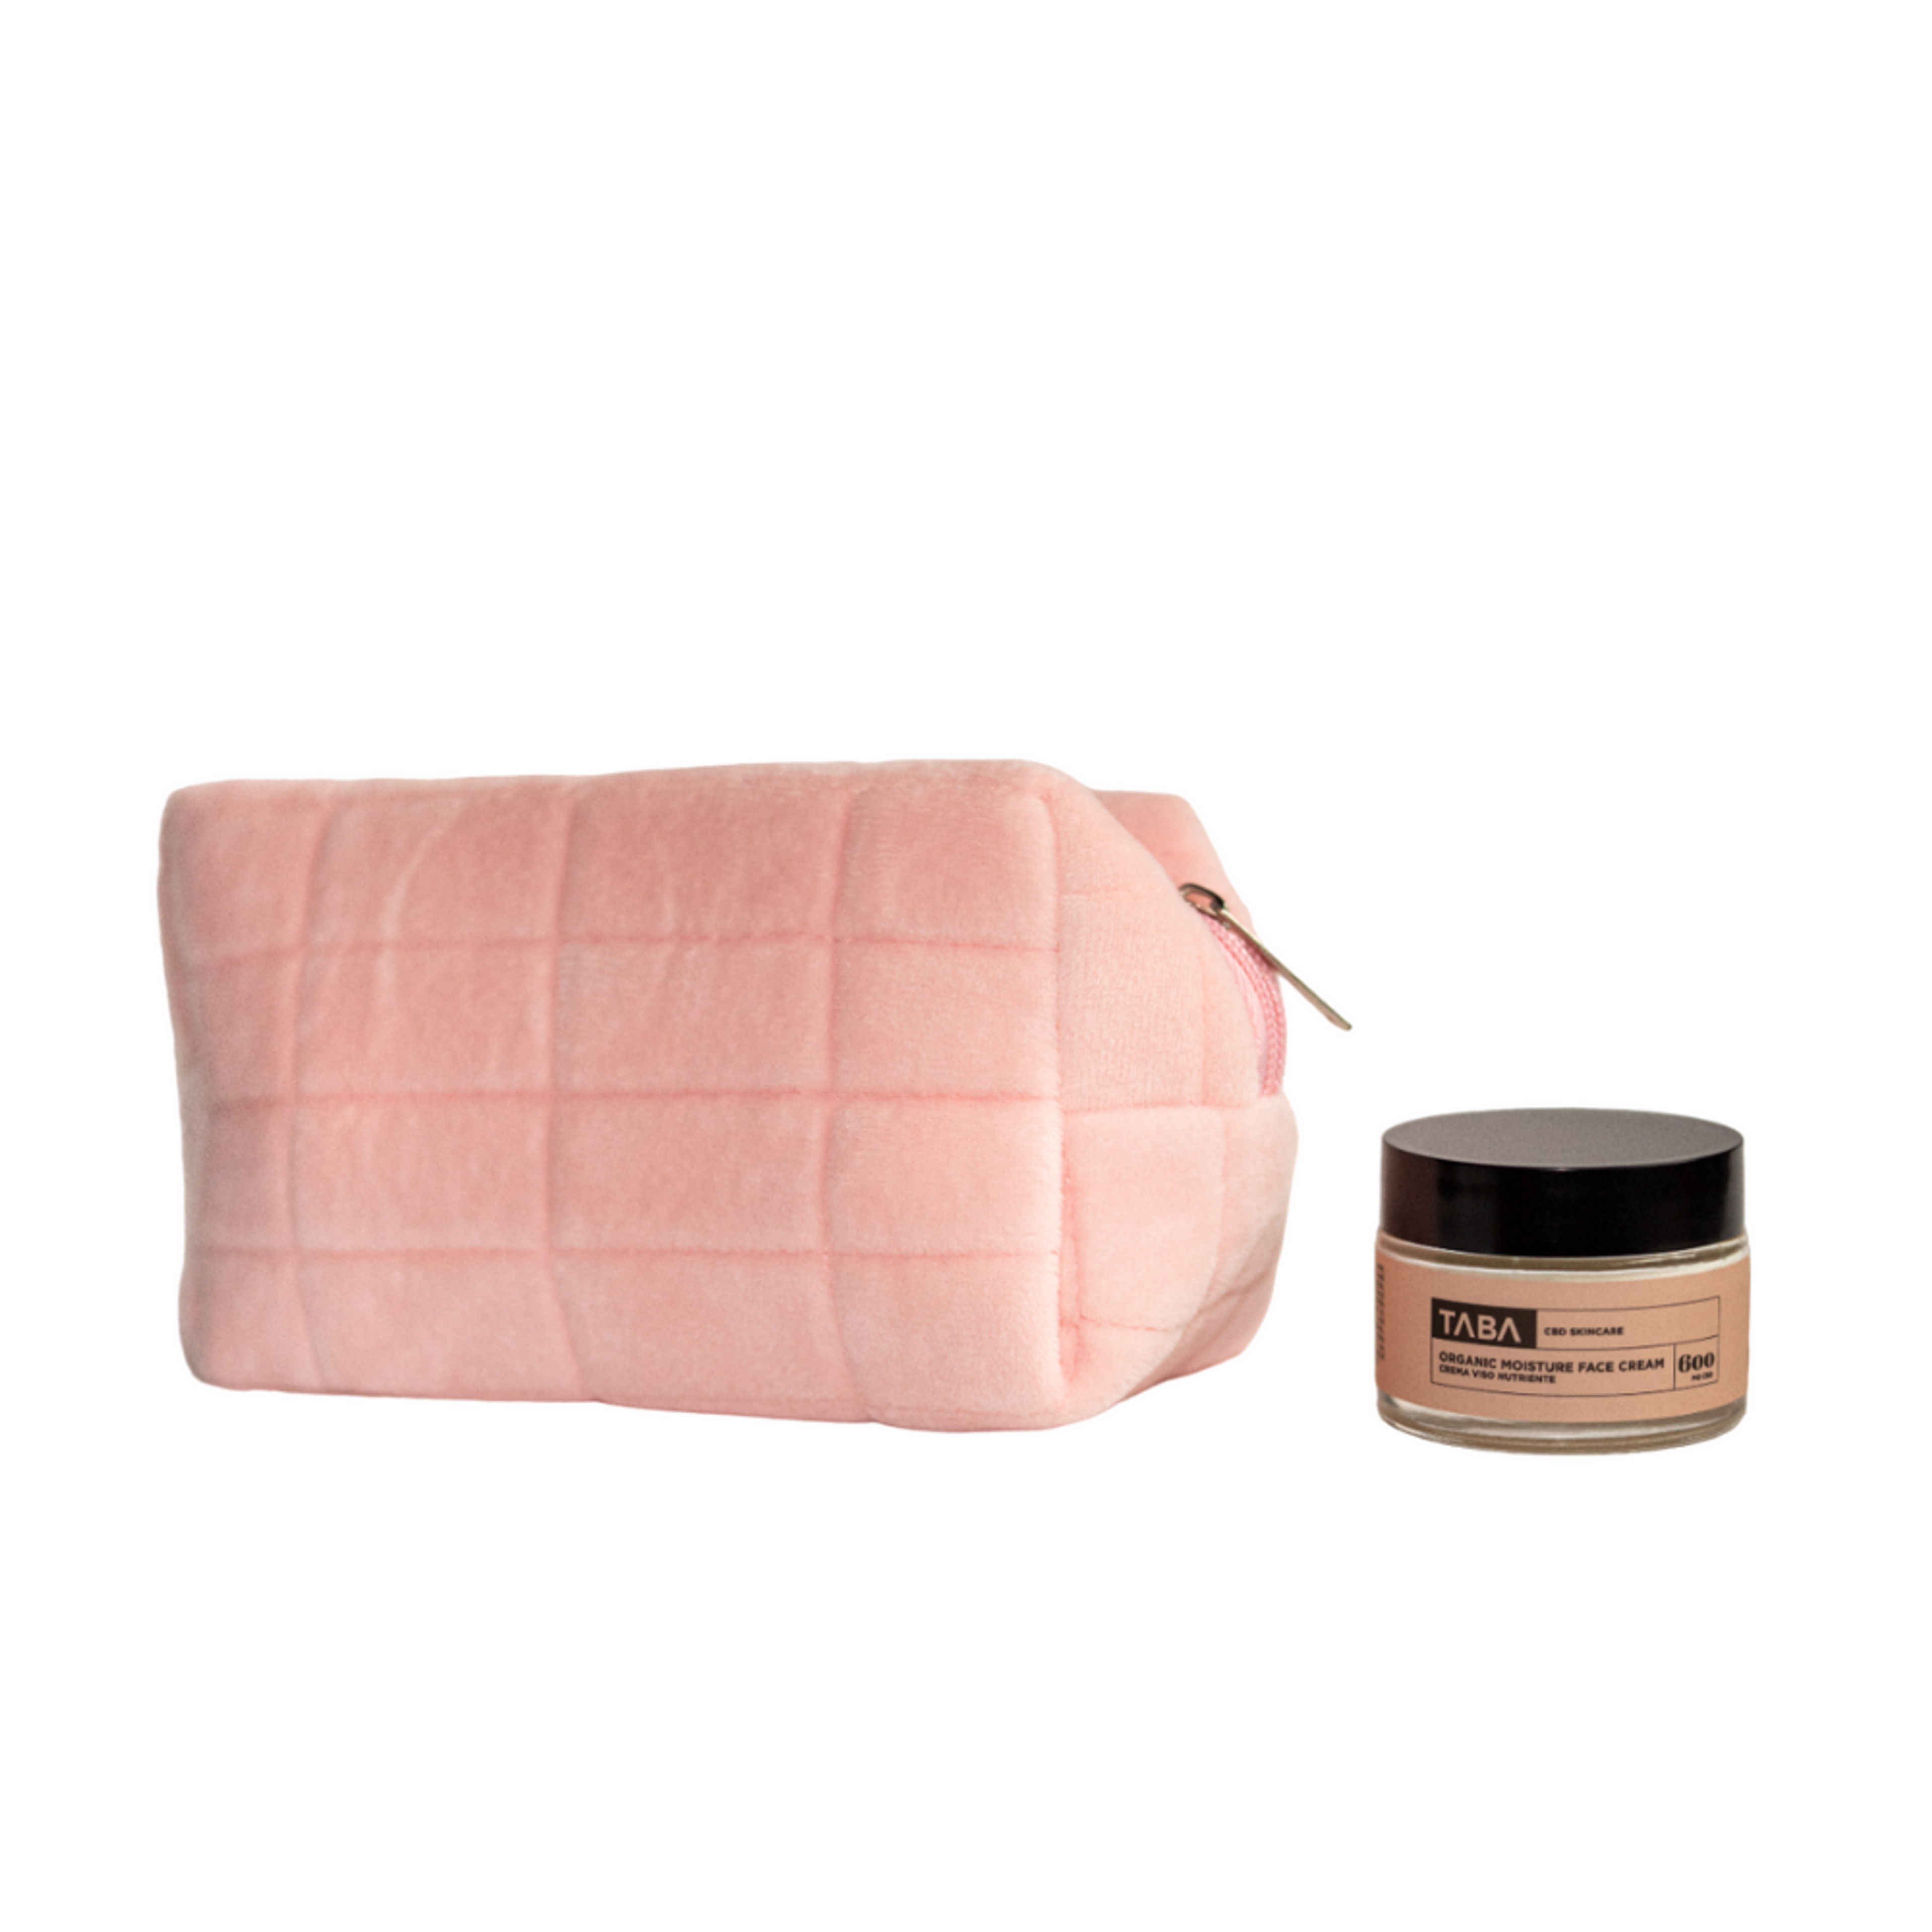 Taba Moisture Face Cream And Velvet Pink Beauty Bag 1